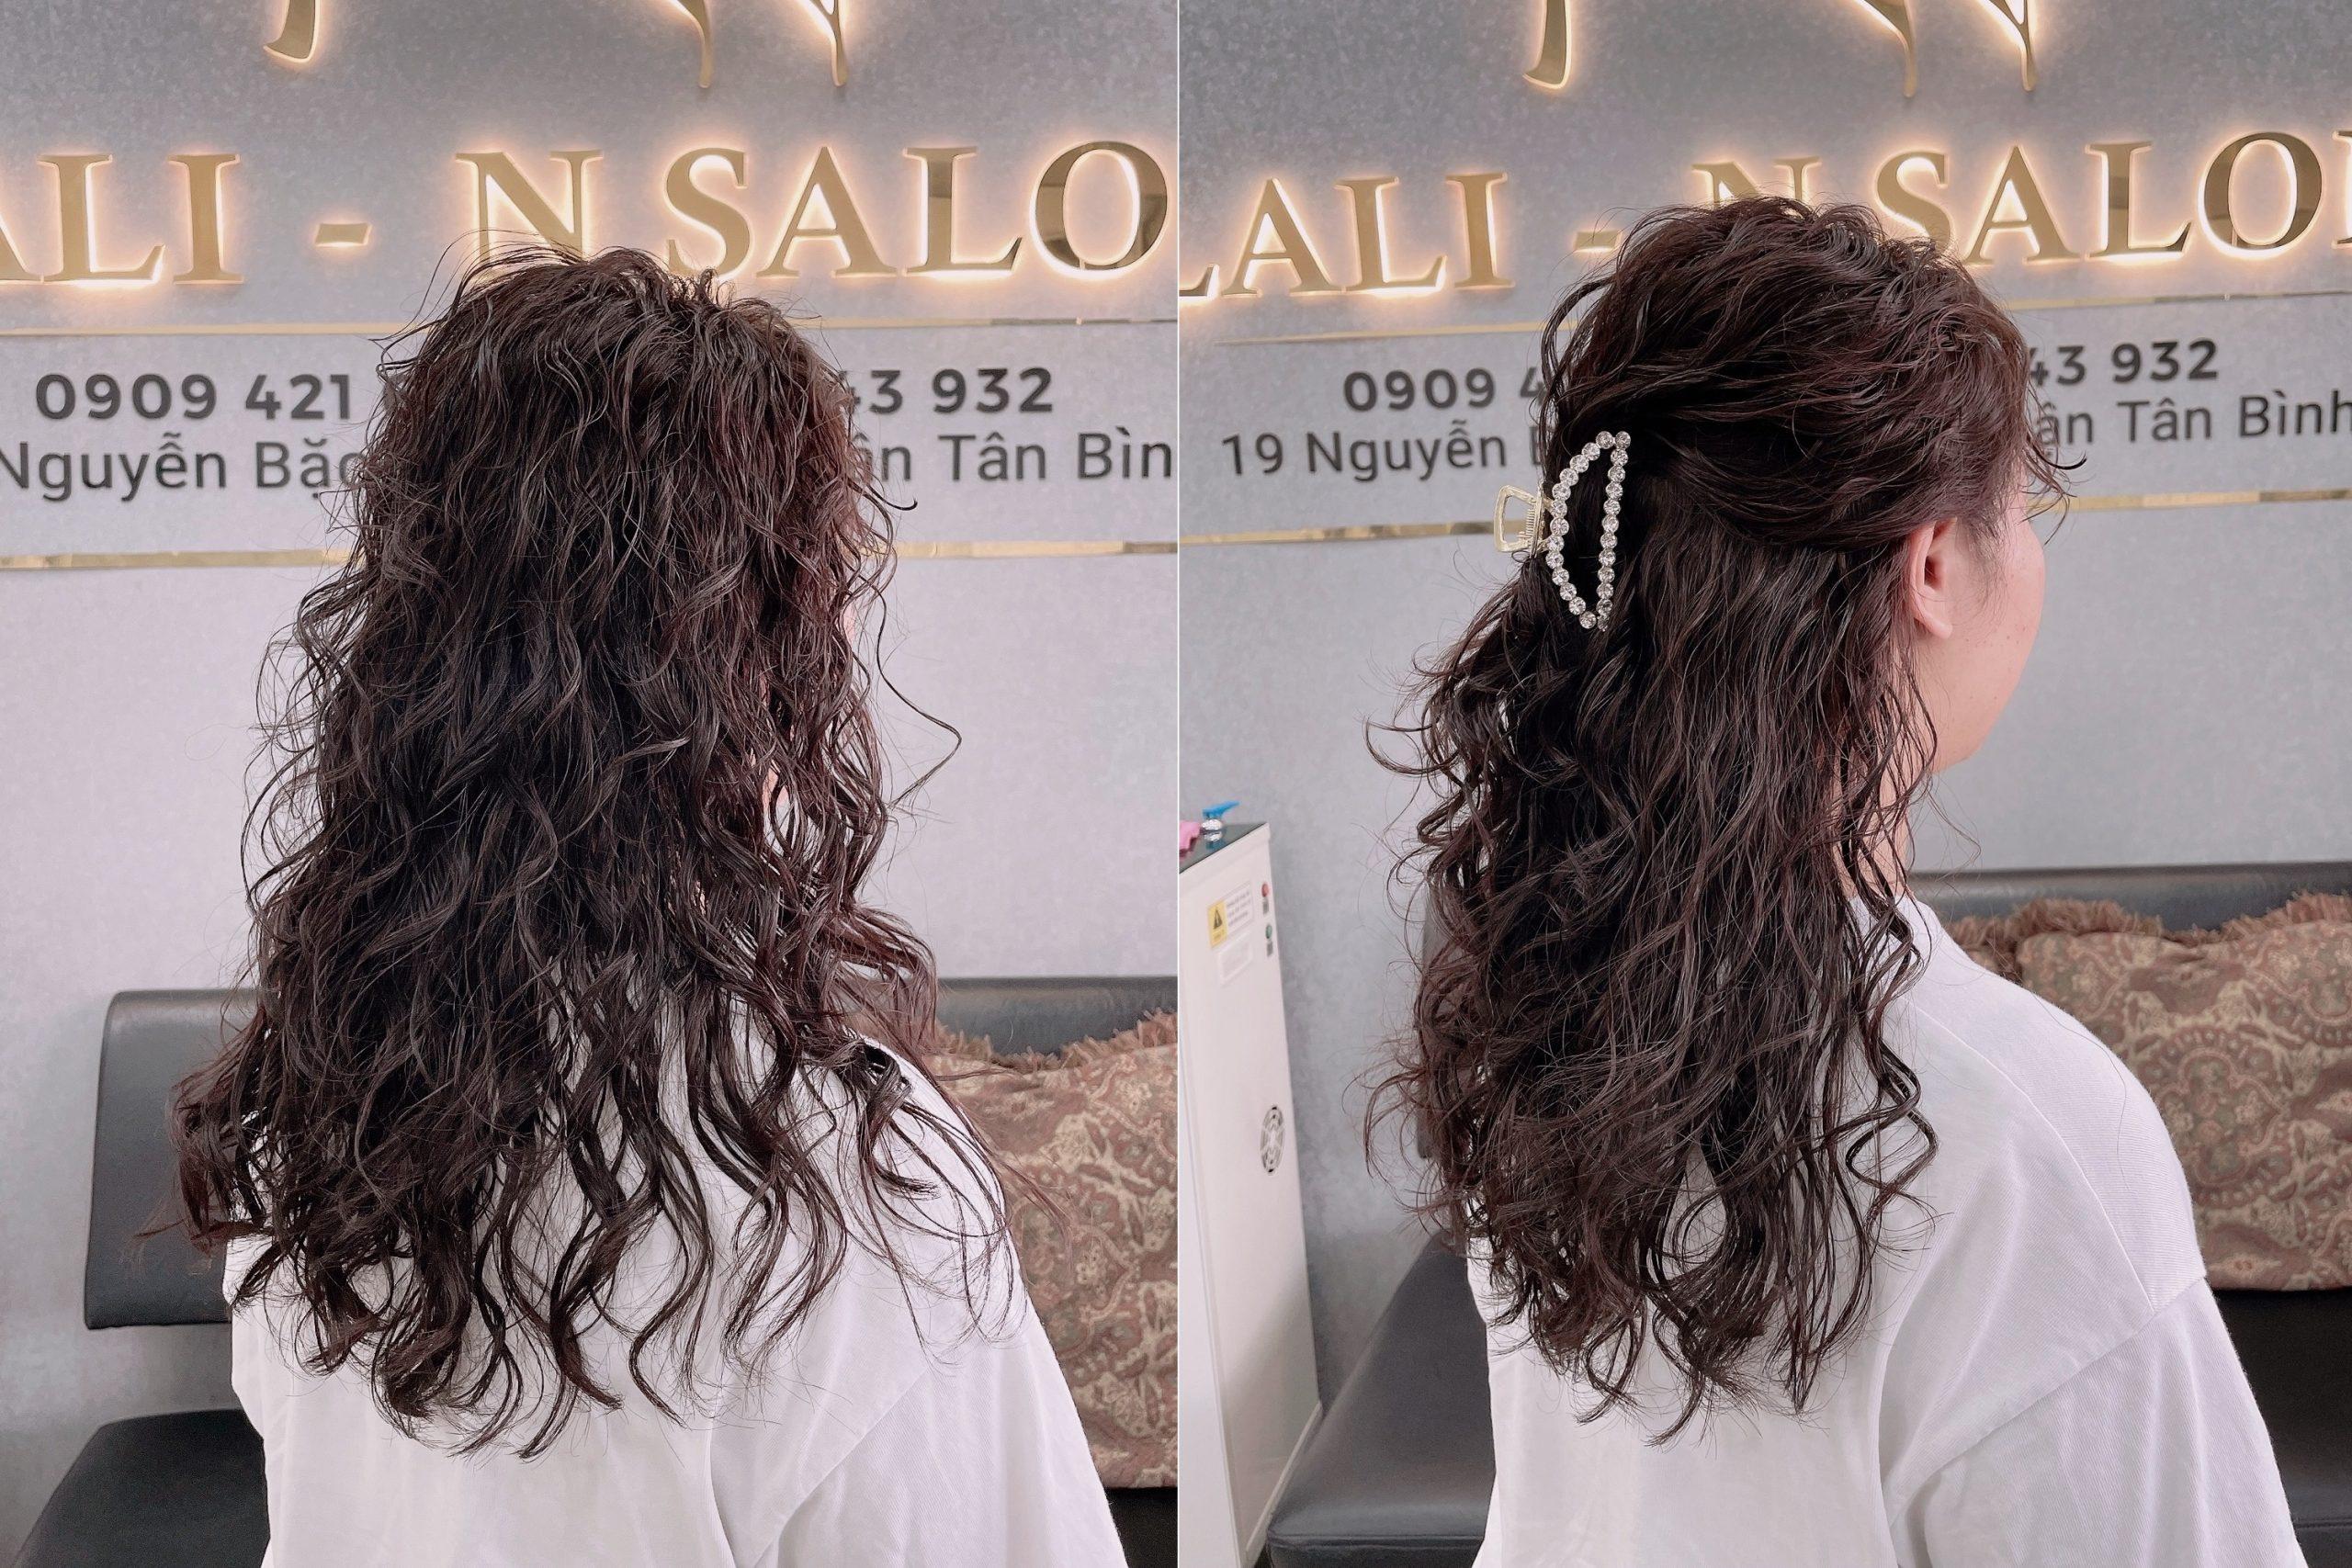 Salon uốn tóc Hàn Quốc sẽ là nơi lý tưởng để bạn tạo kiểu tóc xoăn hippie hoàn hảo. Xem các hình ảnh về dịch vụ uốn tóc tại salon này để tìm kiếm một dịch vụ chuyên nghiệp, tạo nên mái tóc đẹp nhất cho bạn.